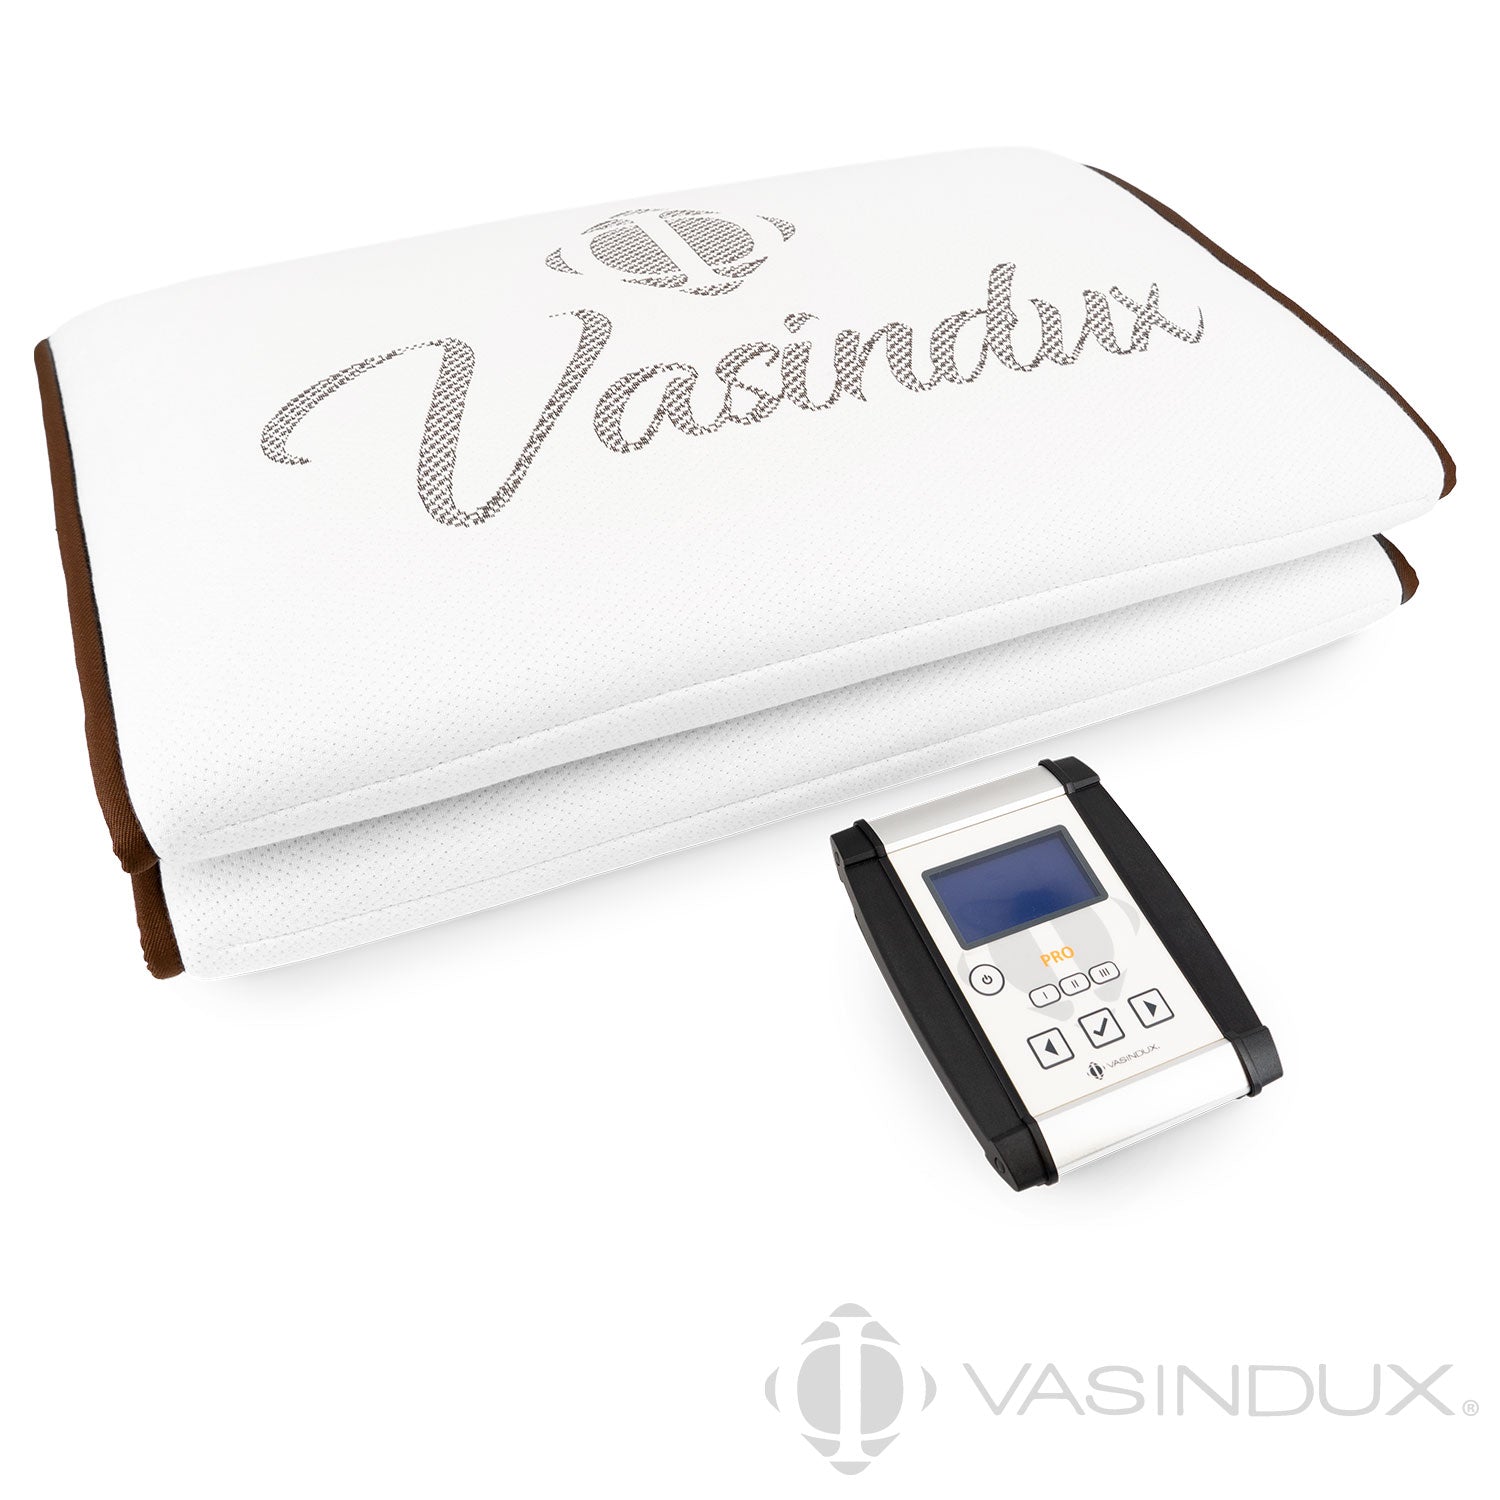 Vasindux Pro